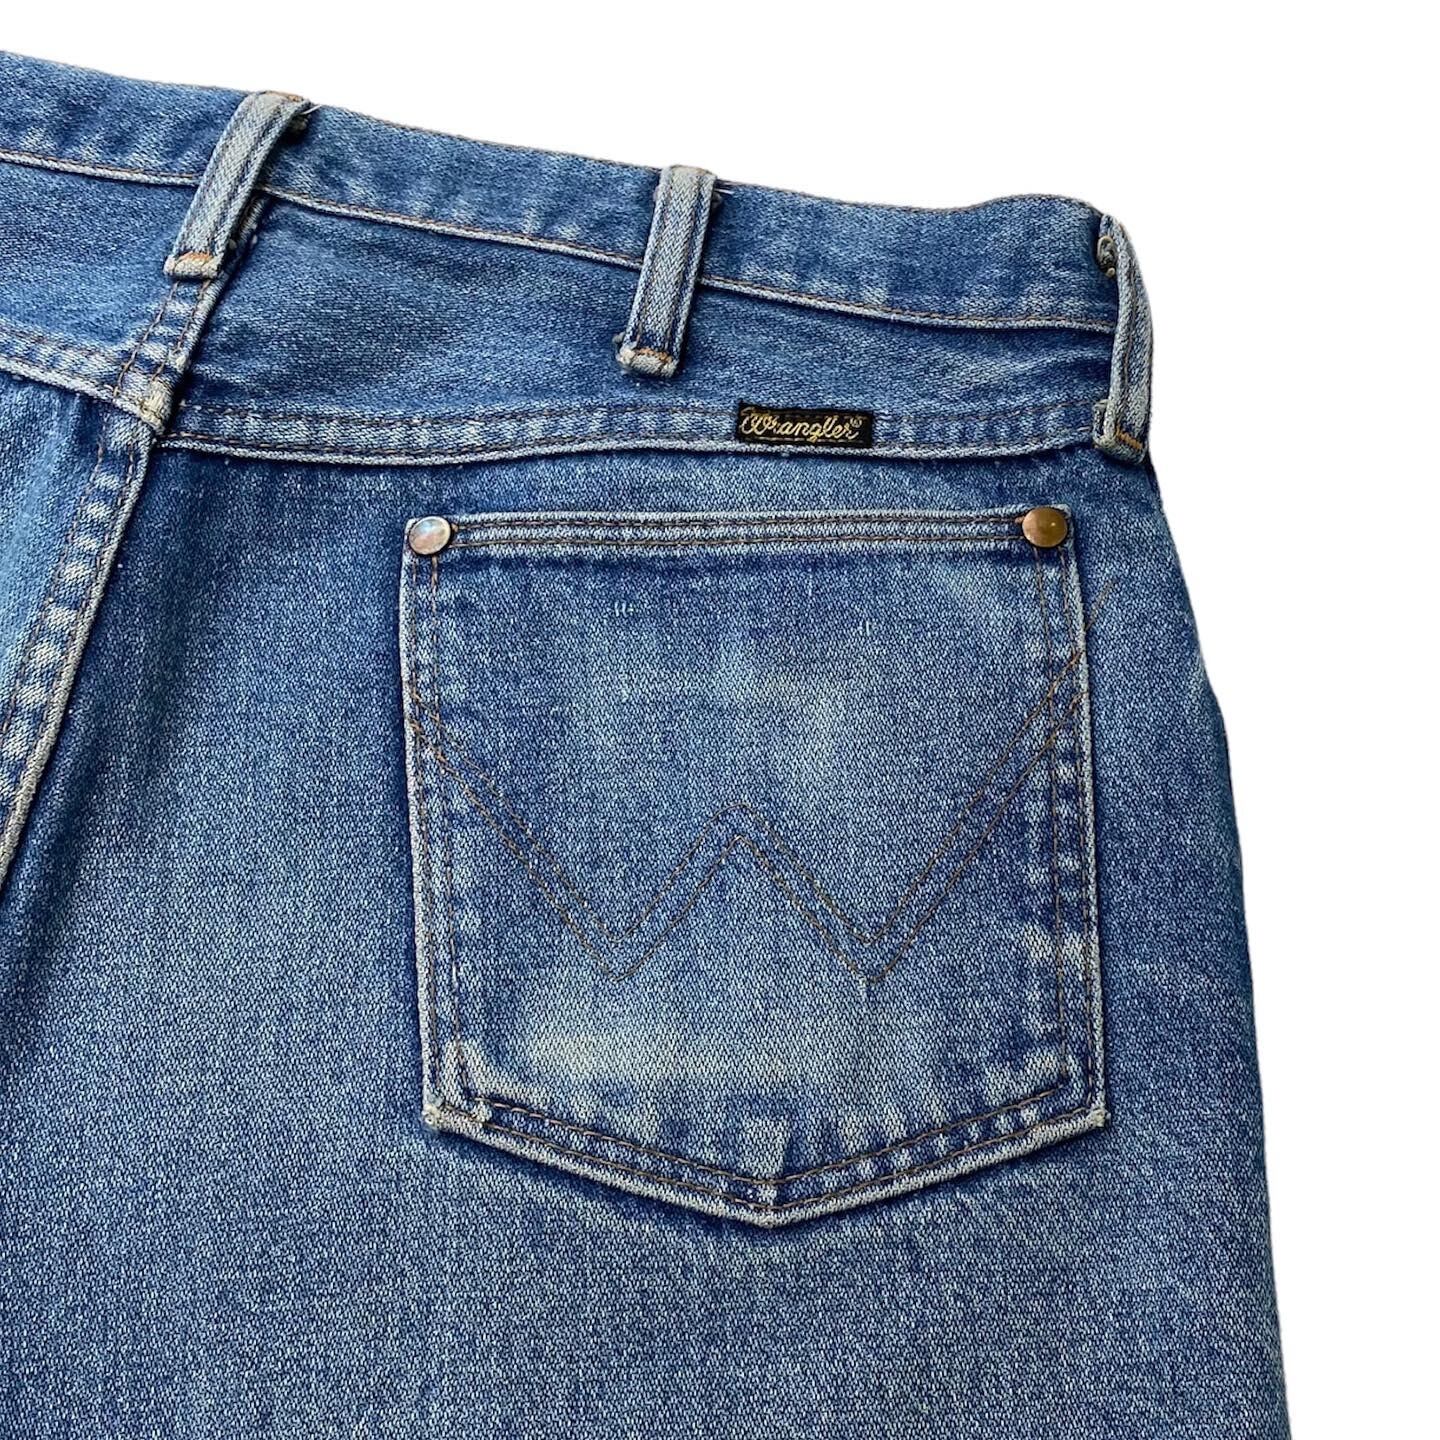 70年代前期13mwz.綾織、ビッグパッチ デニム/ジーンズ パンツ メンズ 2017最新のスタイル